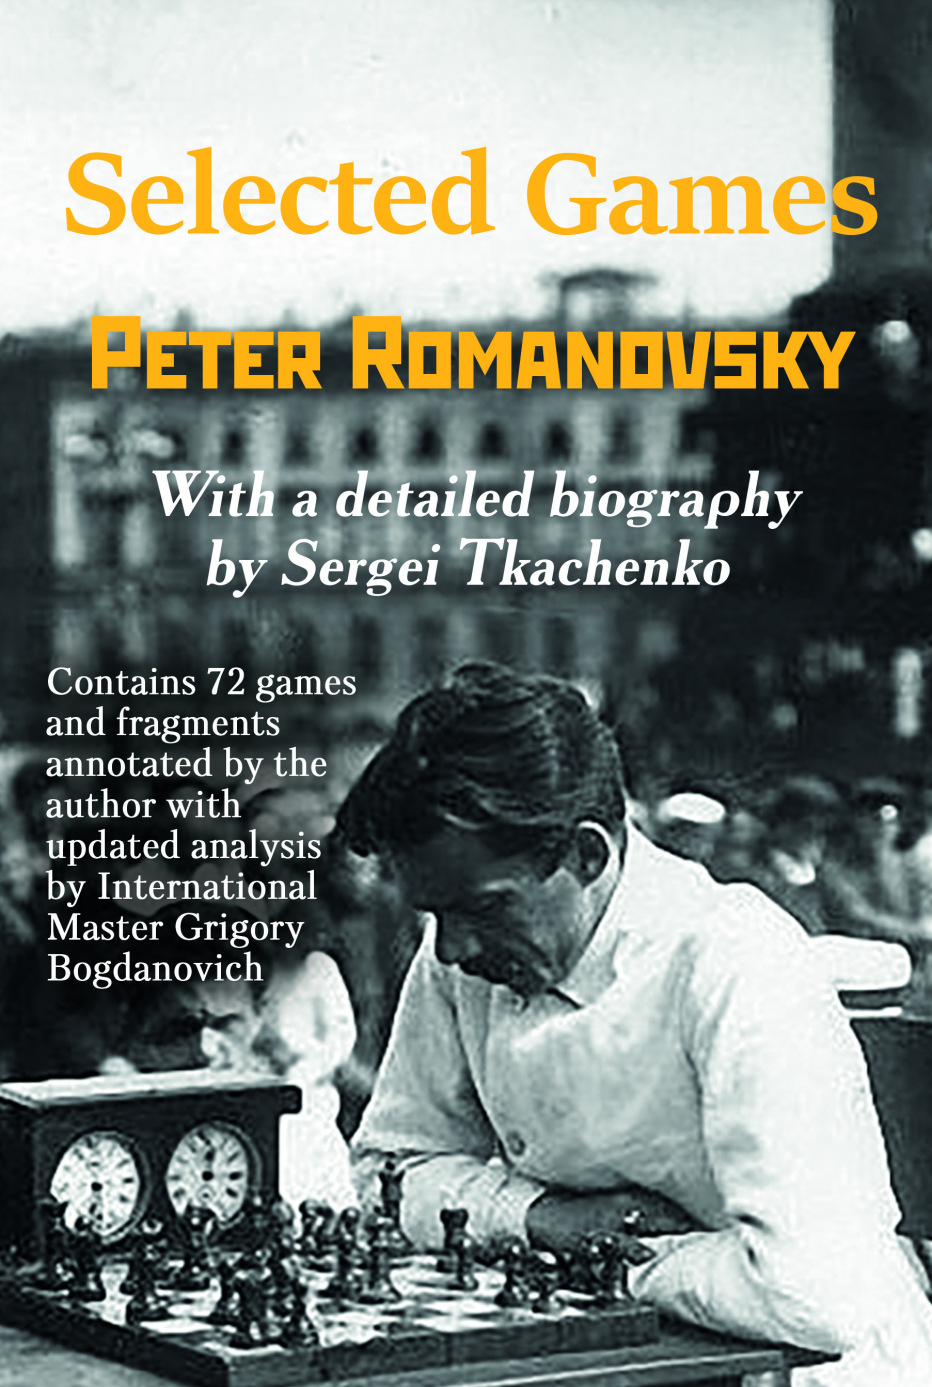 Mikhail Botvinnik quote: If Tal sacrifices a piece, take it. If Petrosian  sacrifices